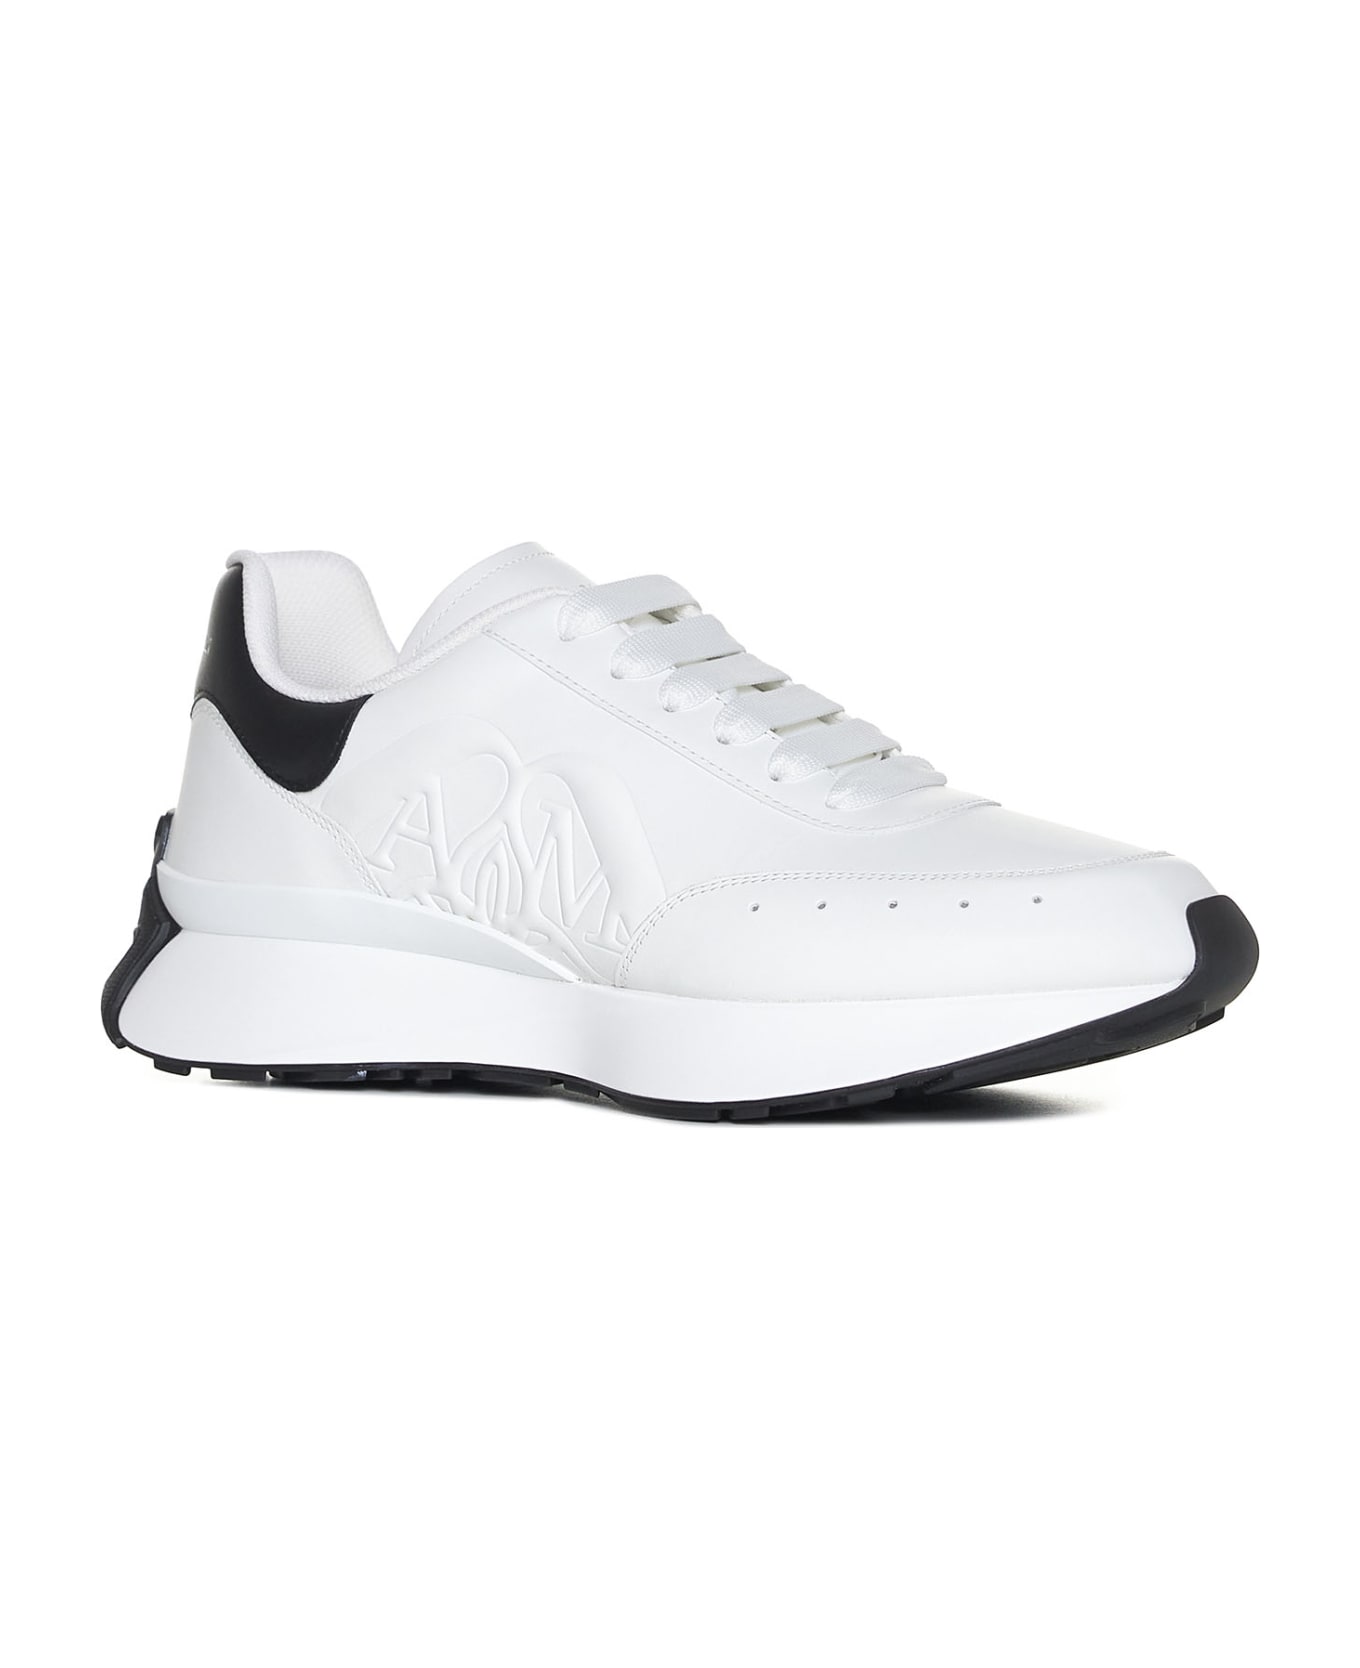 Alexander McQueen Sprint Runner Sneakers - White/black